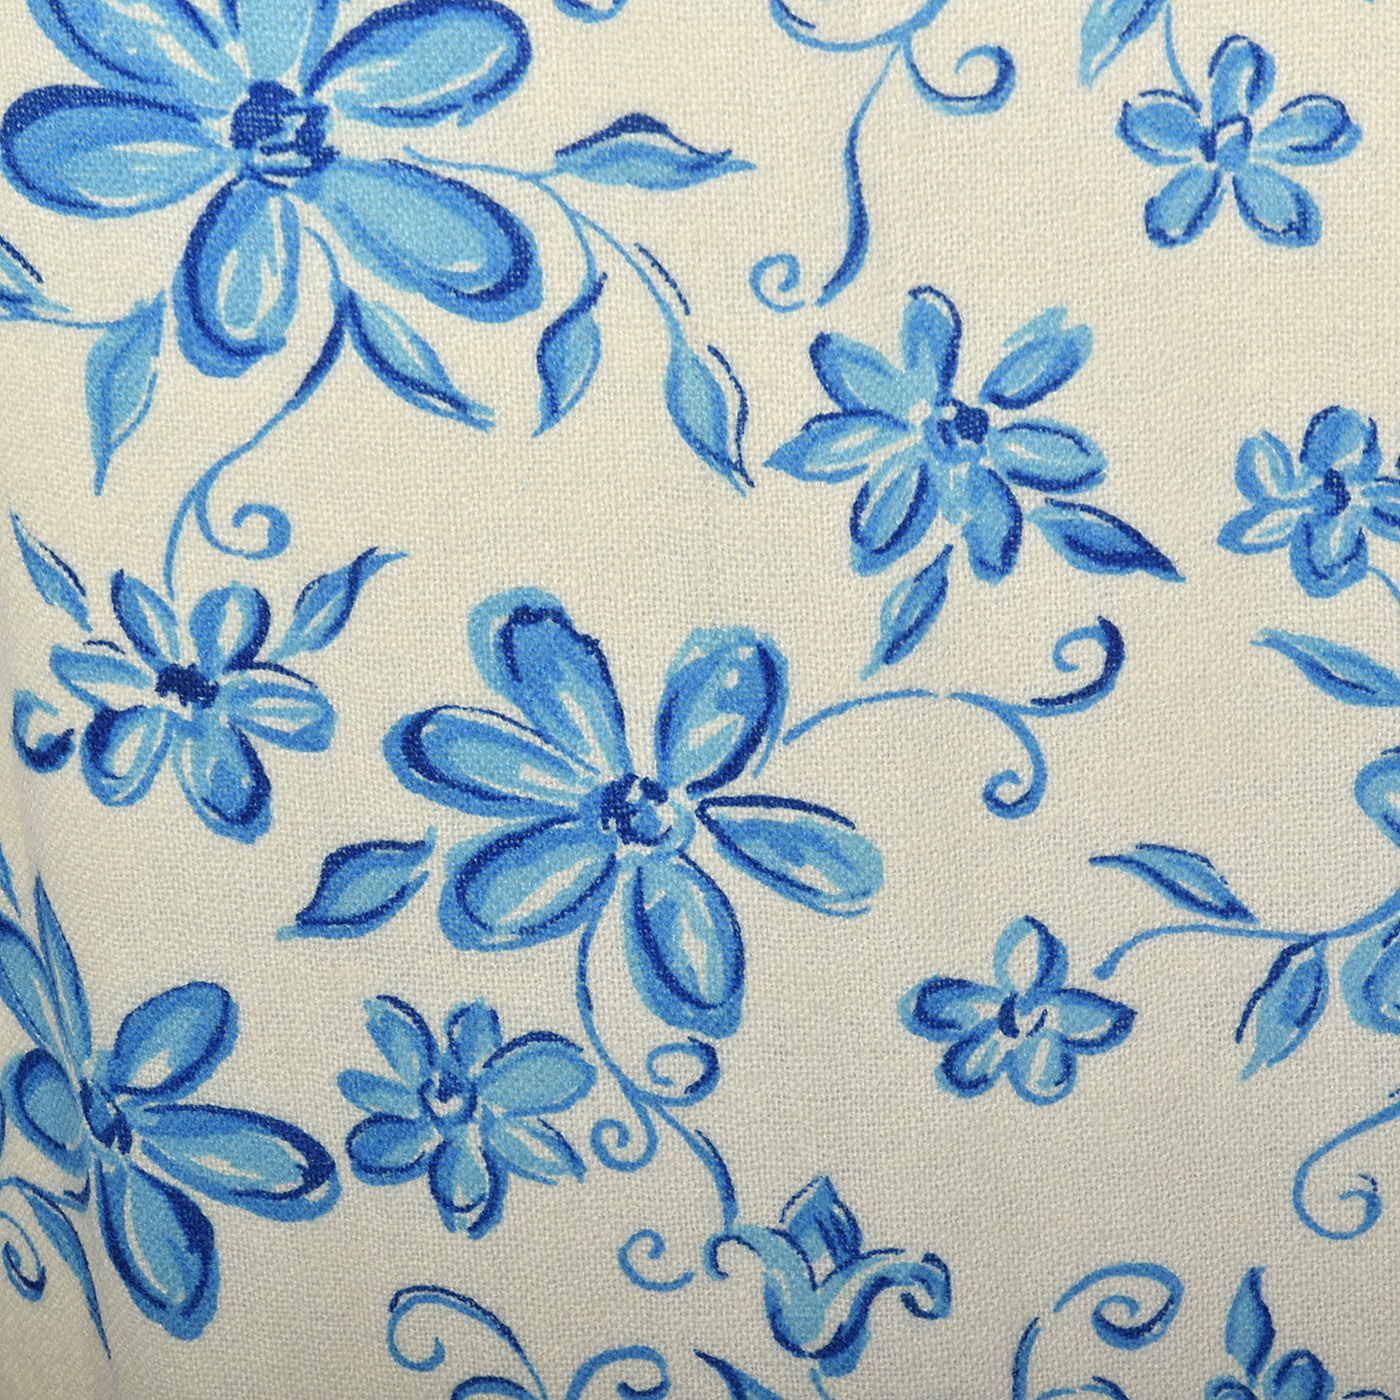 1960s Blue Floral Pencil Skirt